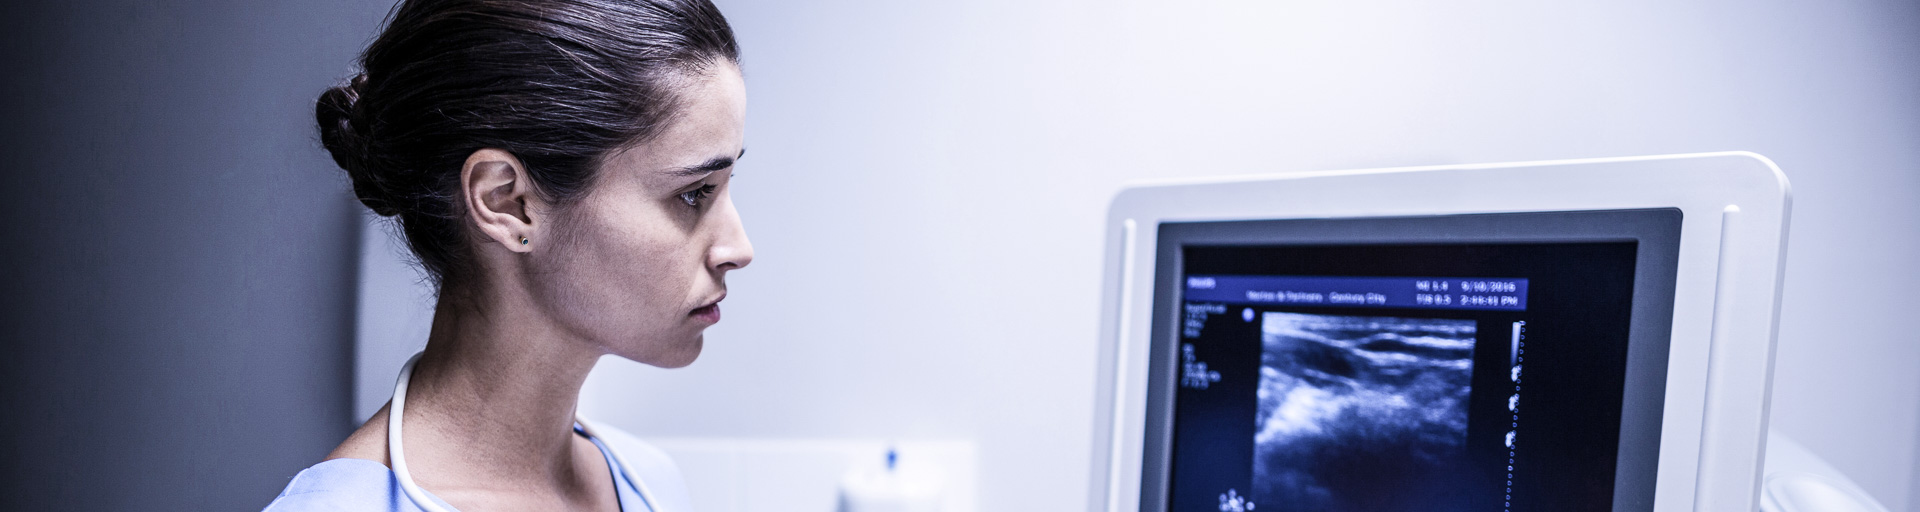 Ärztin schaut auf den Monitor eines Ultraschallgerätes